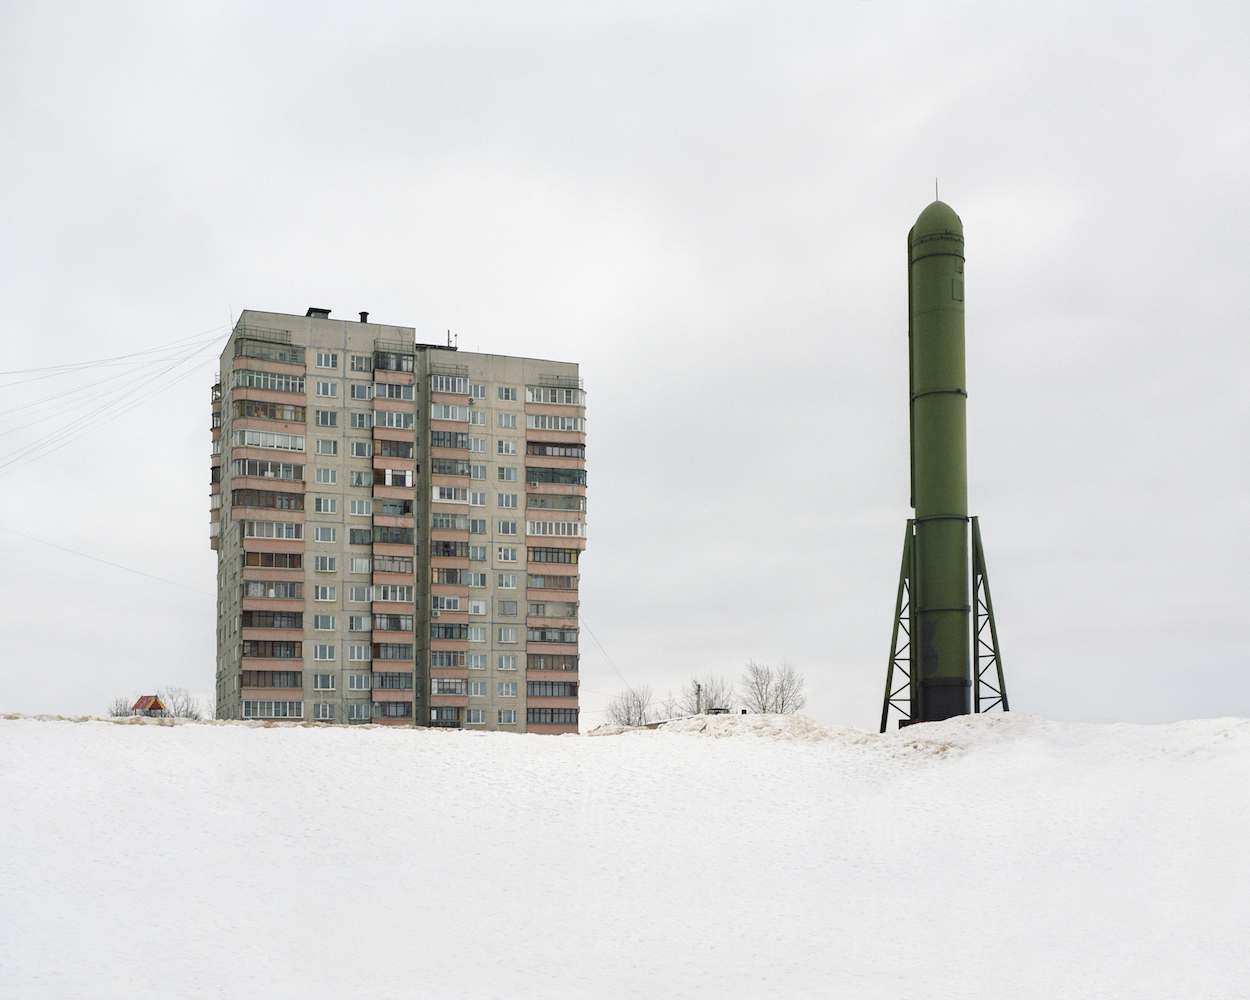 #6 из серии «‎Закрытые территории»‎. Монумент создателям Российского ядерного щита в городе Дзержинске, в котором раньше производили ракетные двигатели. Россия, Дзержинский